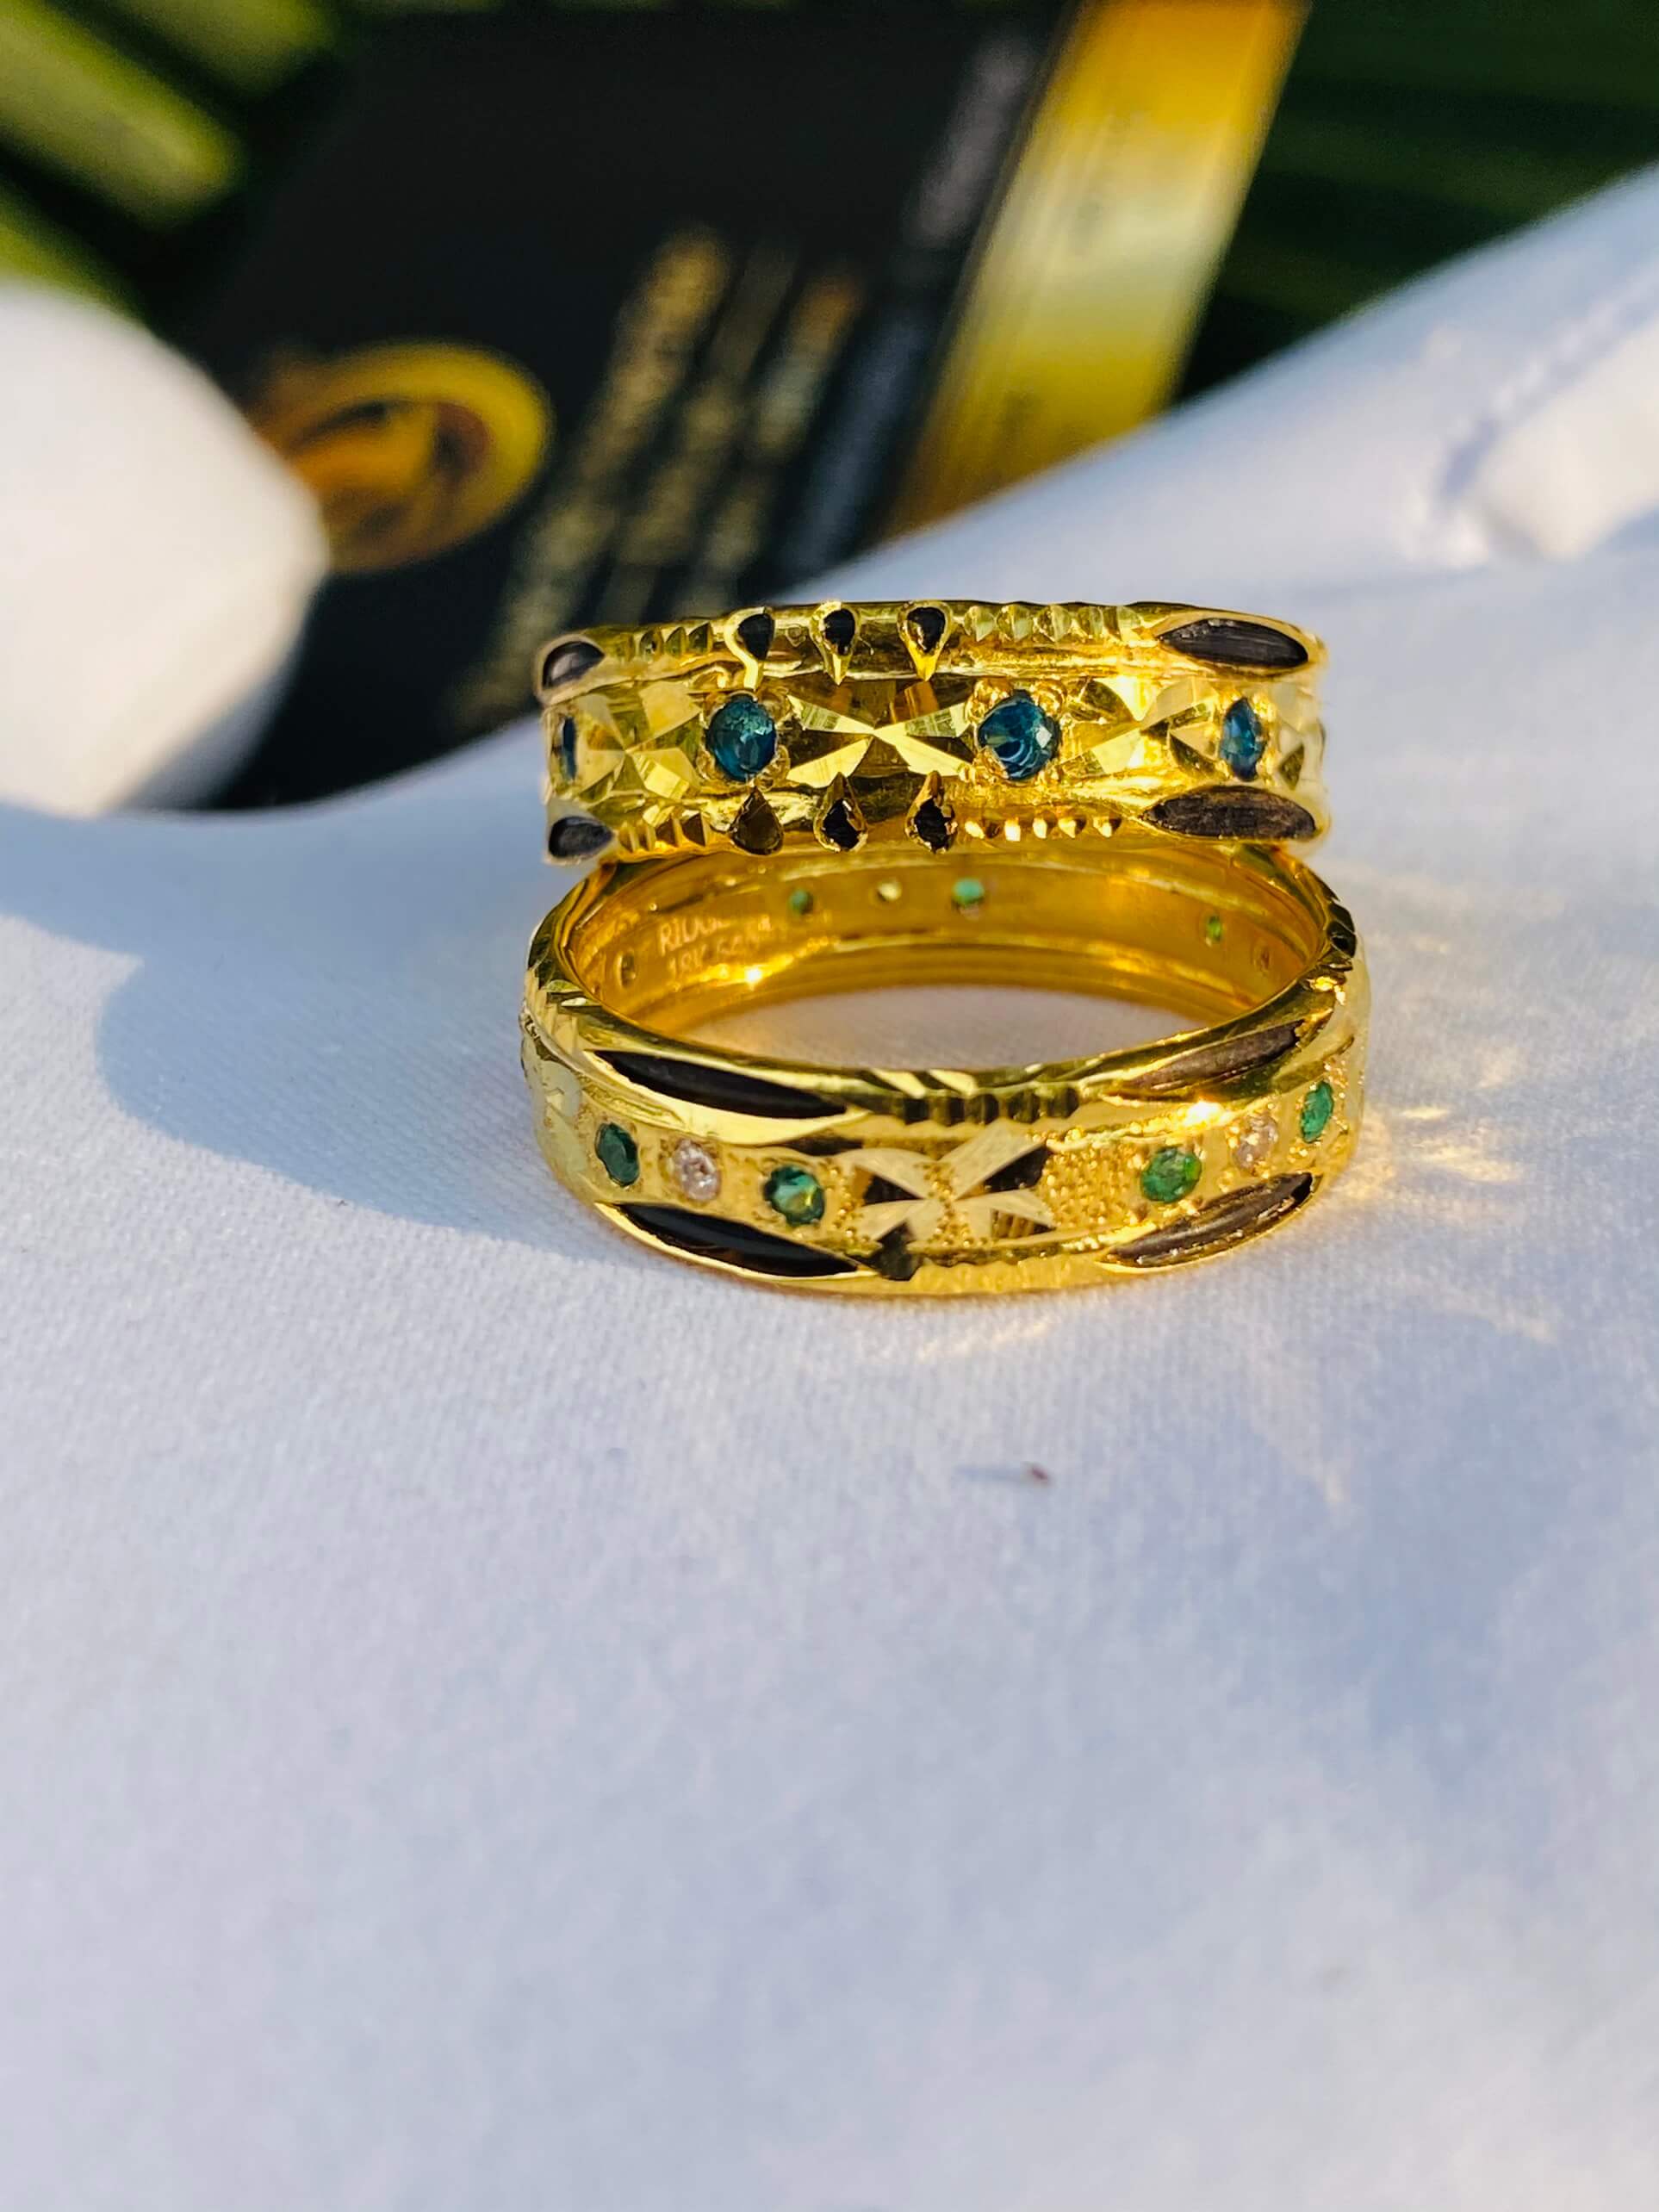 Cặp nhẫn cưới nam nữ phong thủy tượng trưng cho tình yêu vĩnh hằng